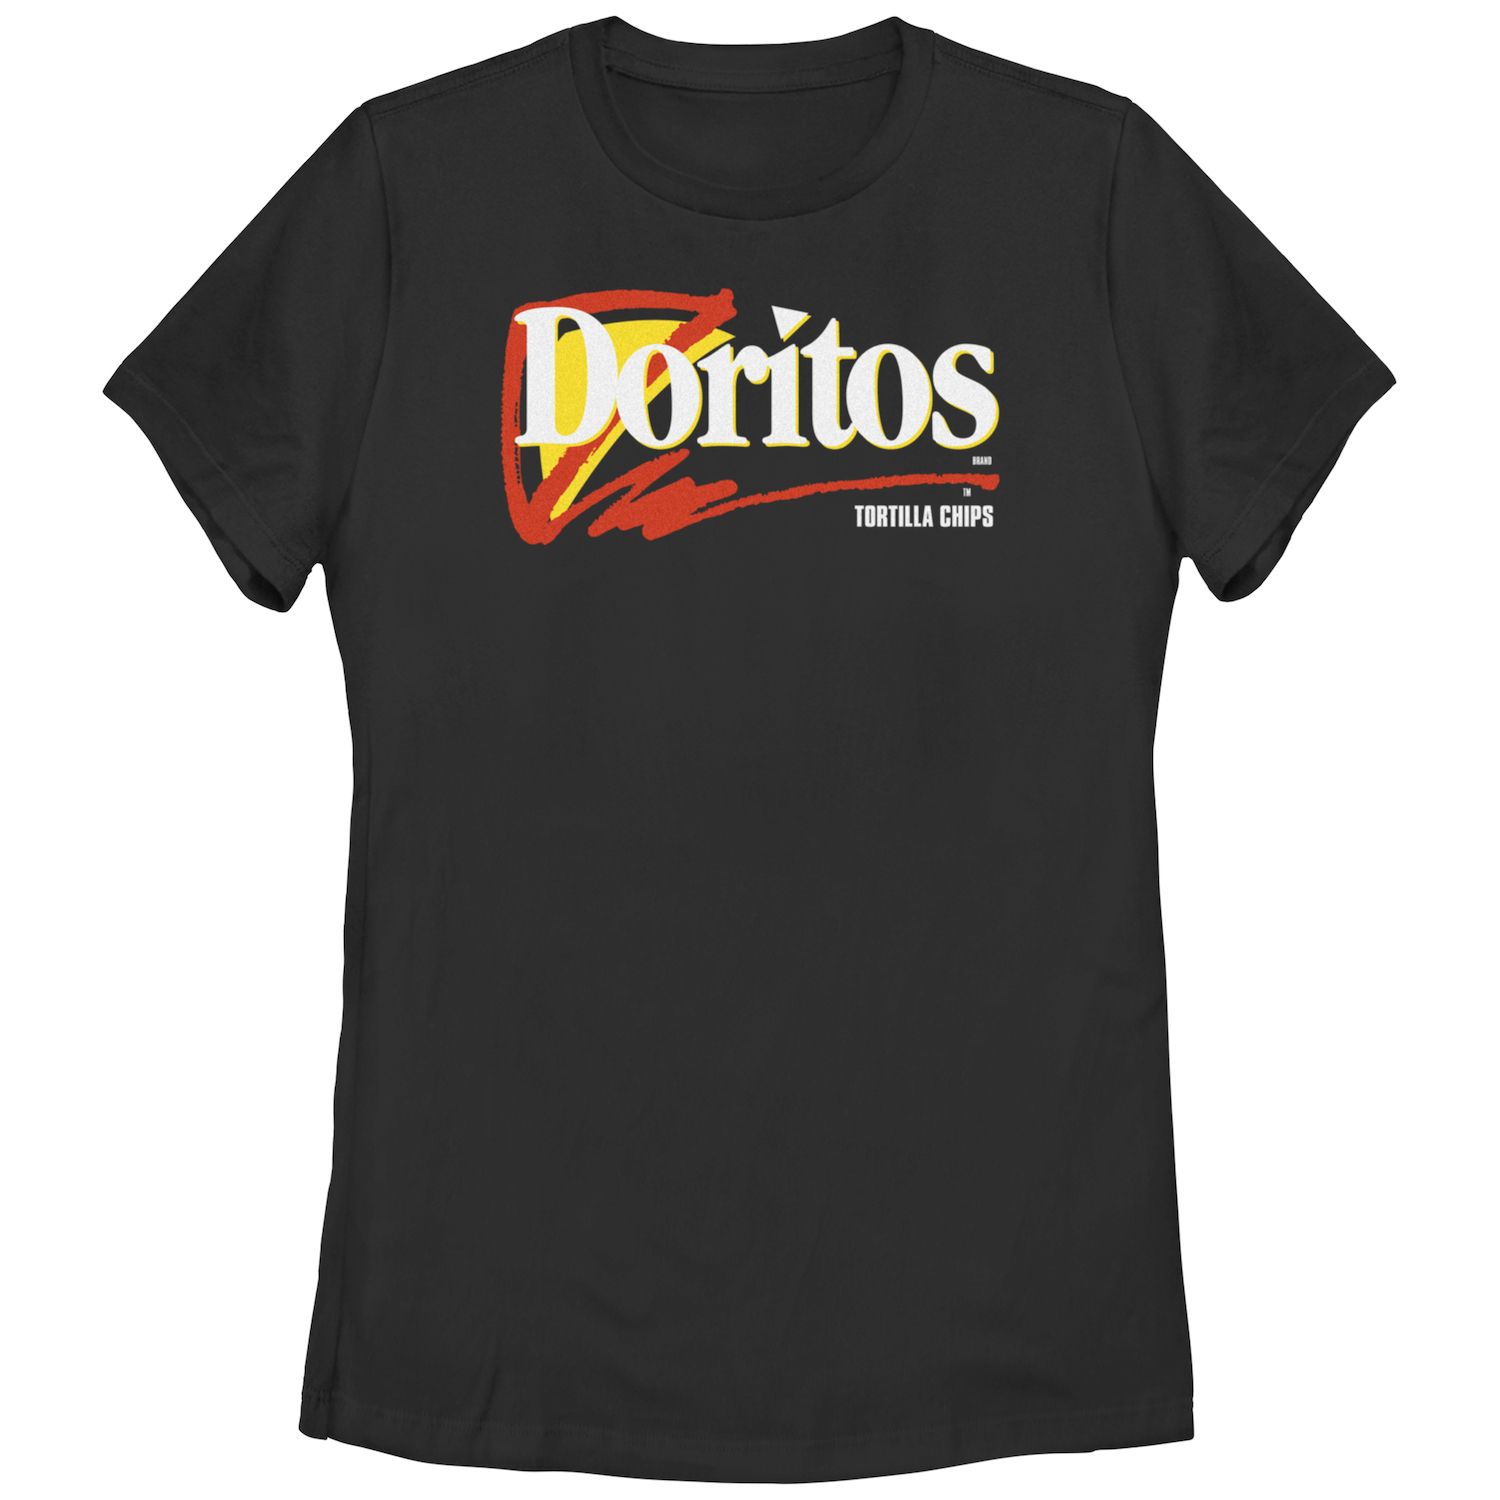 Детская футболка с логотипом Doritos Tortilla Chips и графическим рисунком Doritos мужская футболка с логотипом doritos tortilla chips licensed character